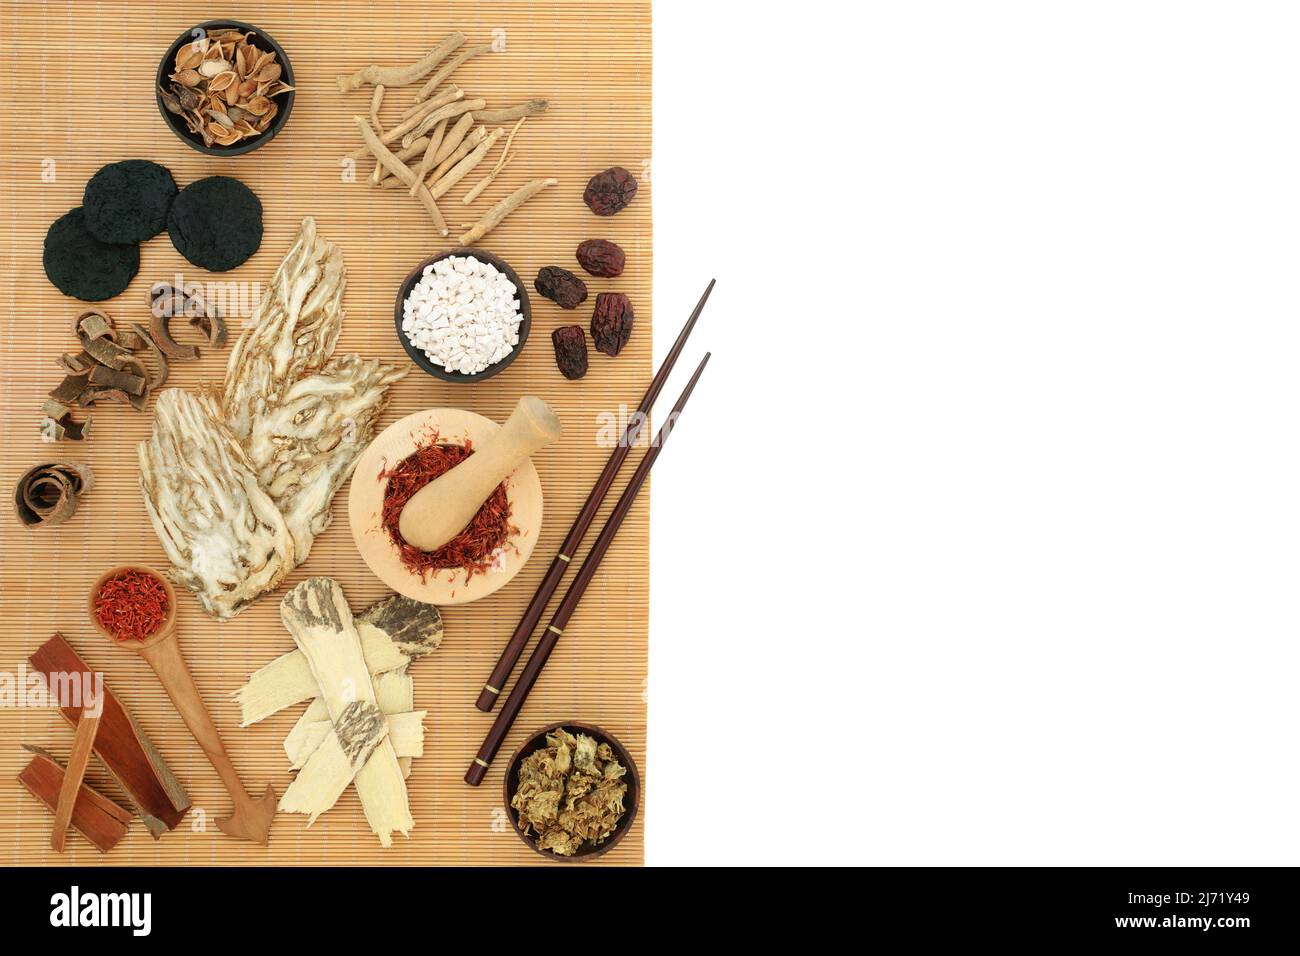 Chinesische Kräuterpflanzenmedizin mit Kräutern und Gewürzen, die in der alten traditionellen Heilung verwendet werden. Natürliches Gesundheitskonzept. Auf Bambus-Hintergrund. Stockfoto